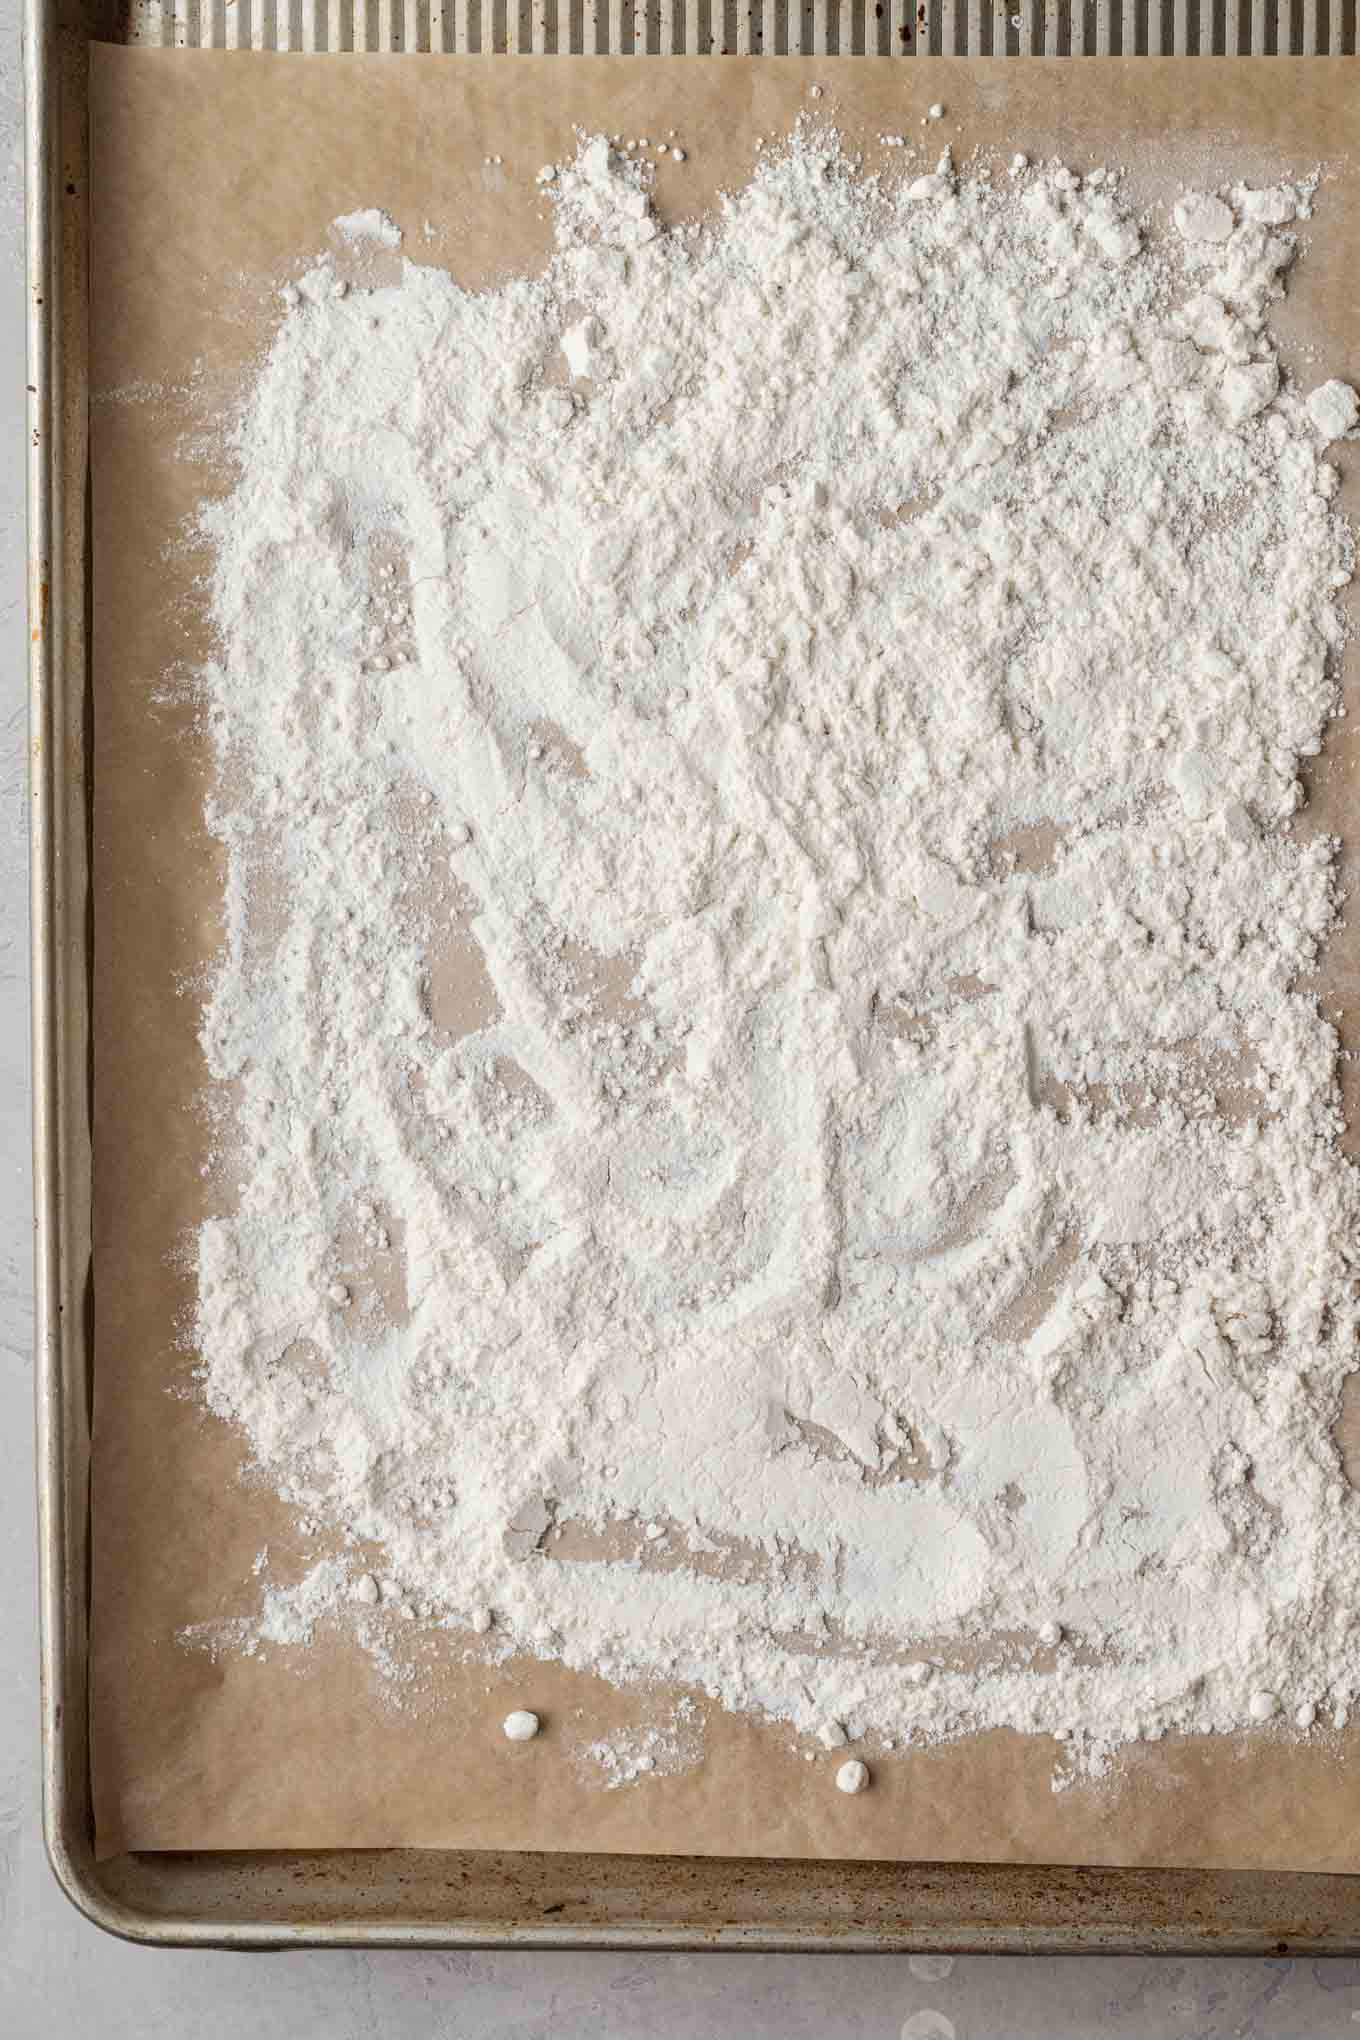 An overhead view of flour on a baking sheet. 